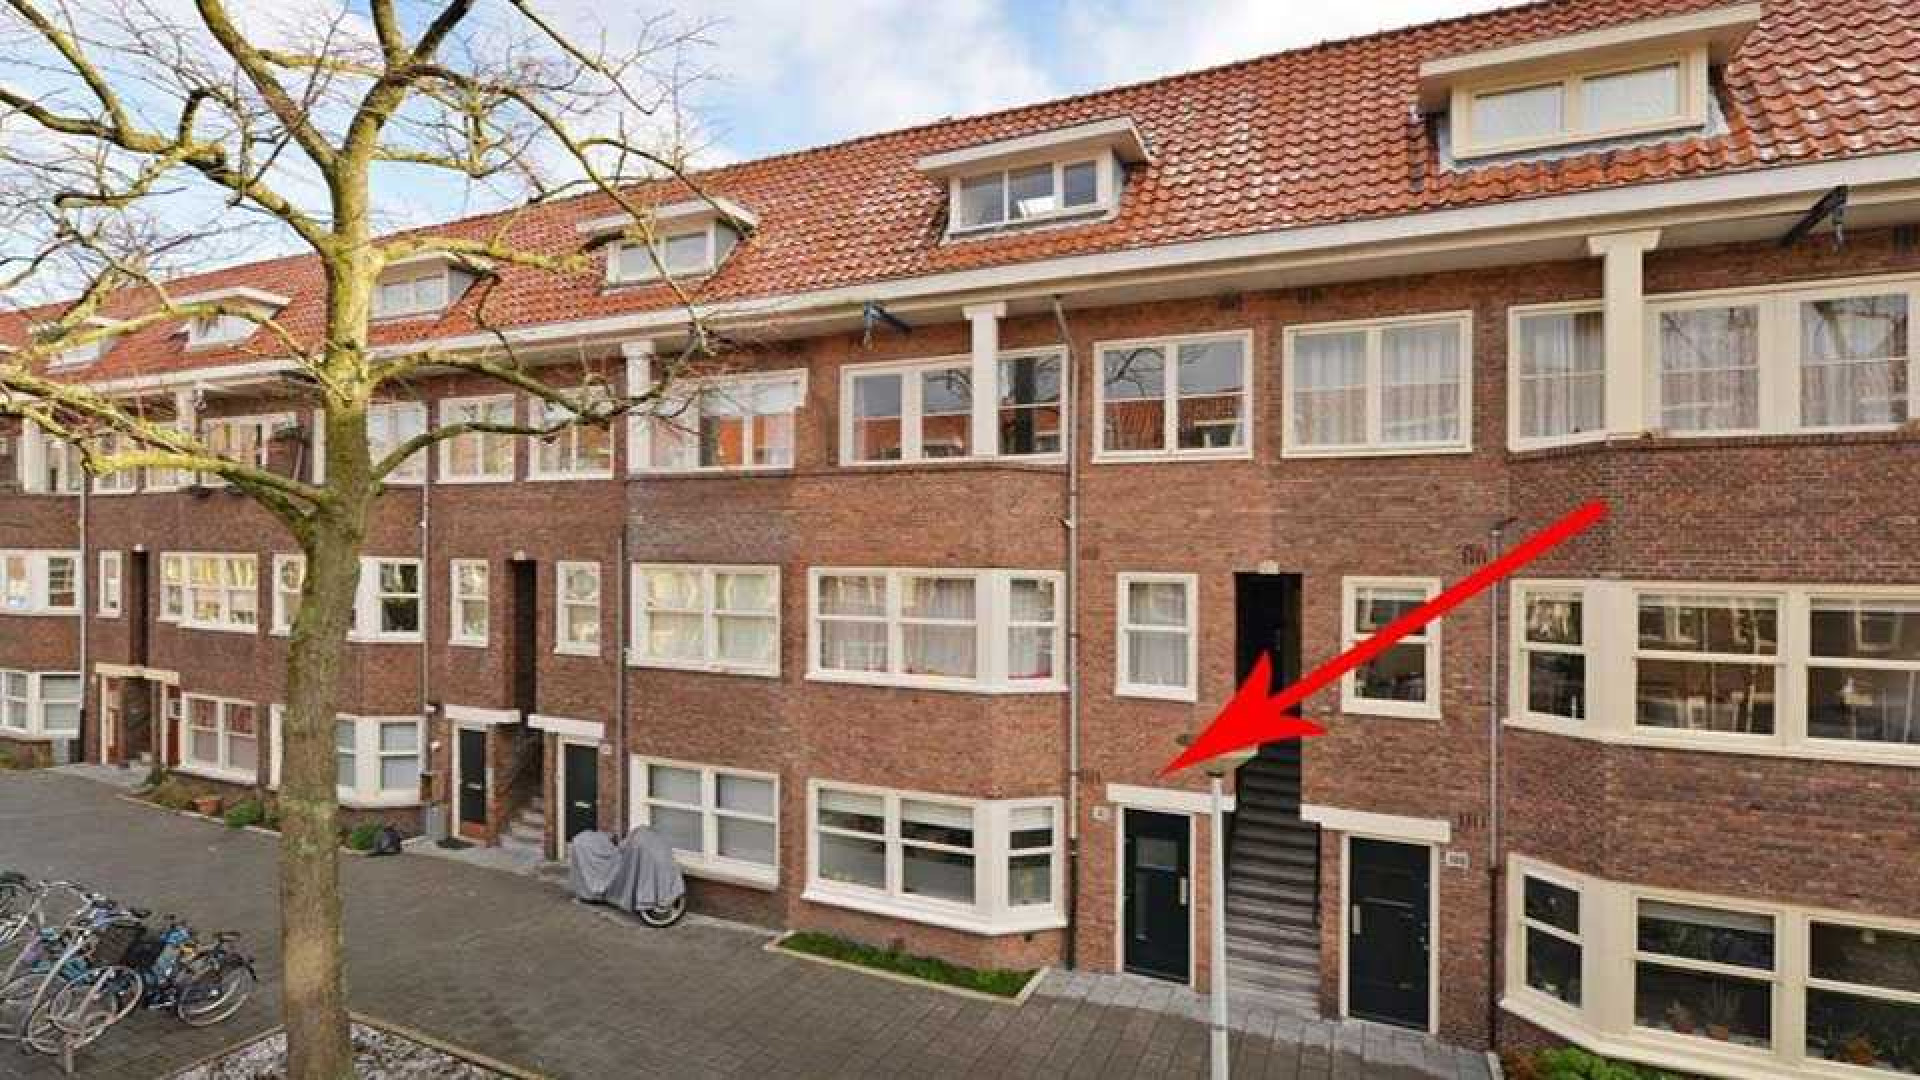 Acteur Peter Blok verkoopt zijn huis om dicht bij zijn vriendin te gaan wonen! Zie foto's